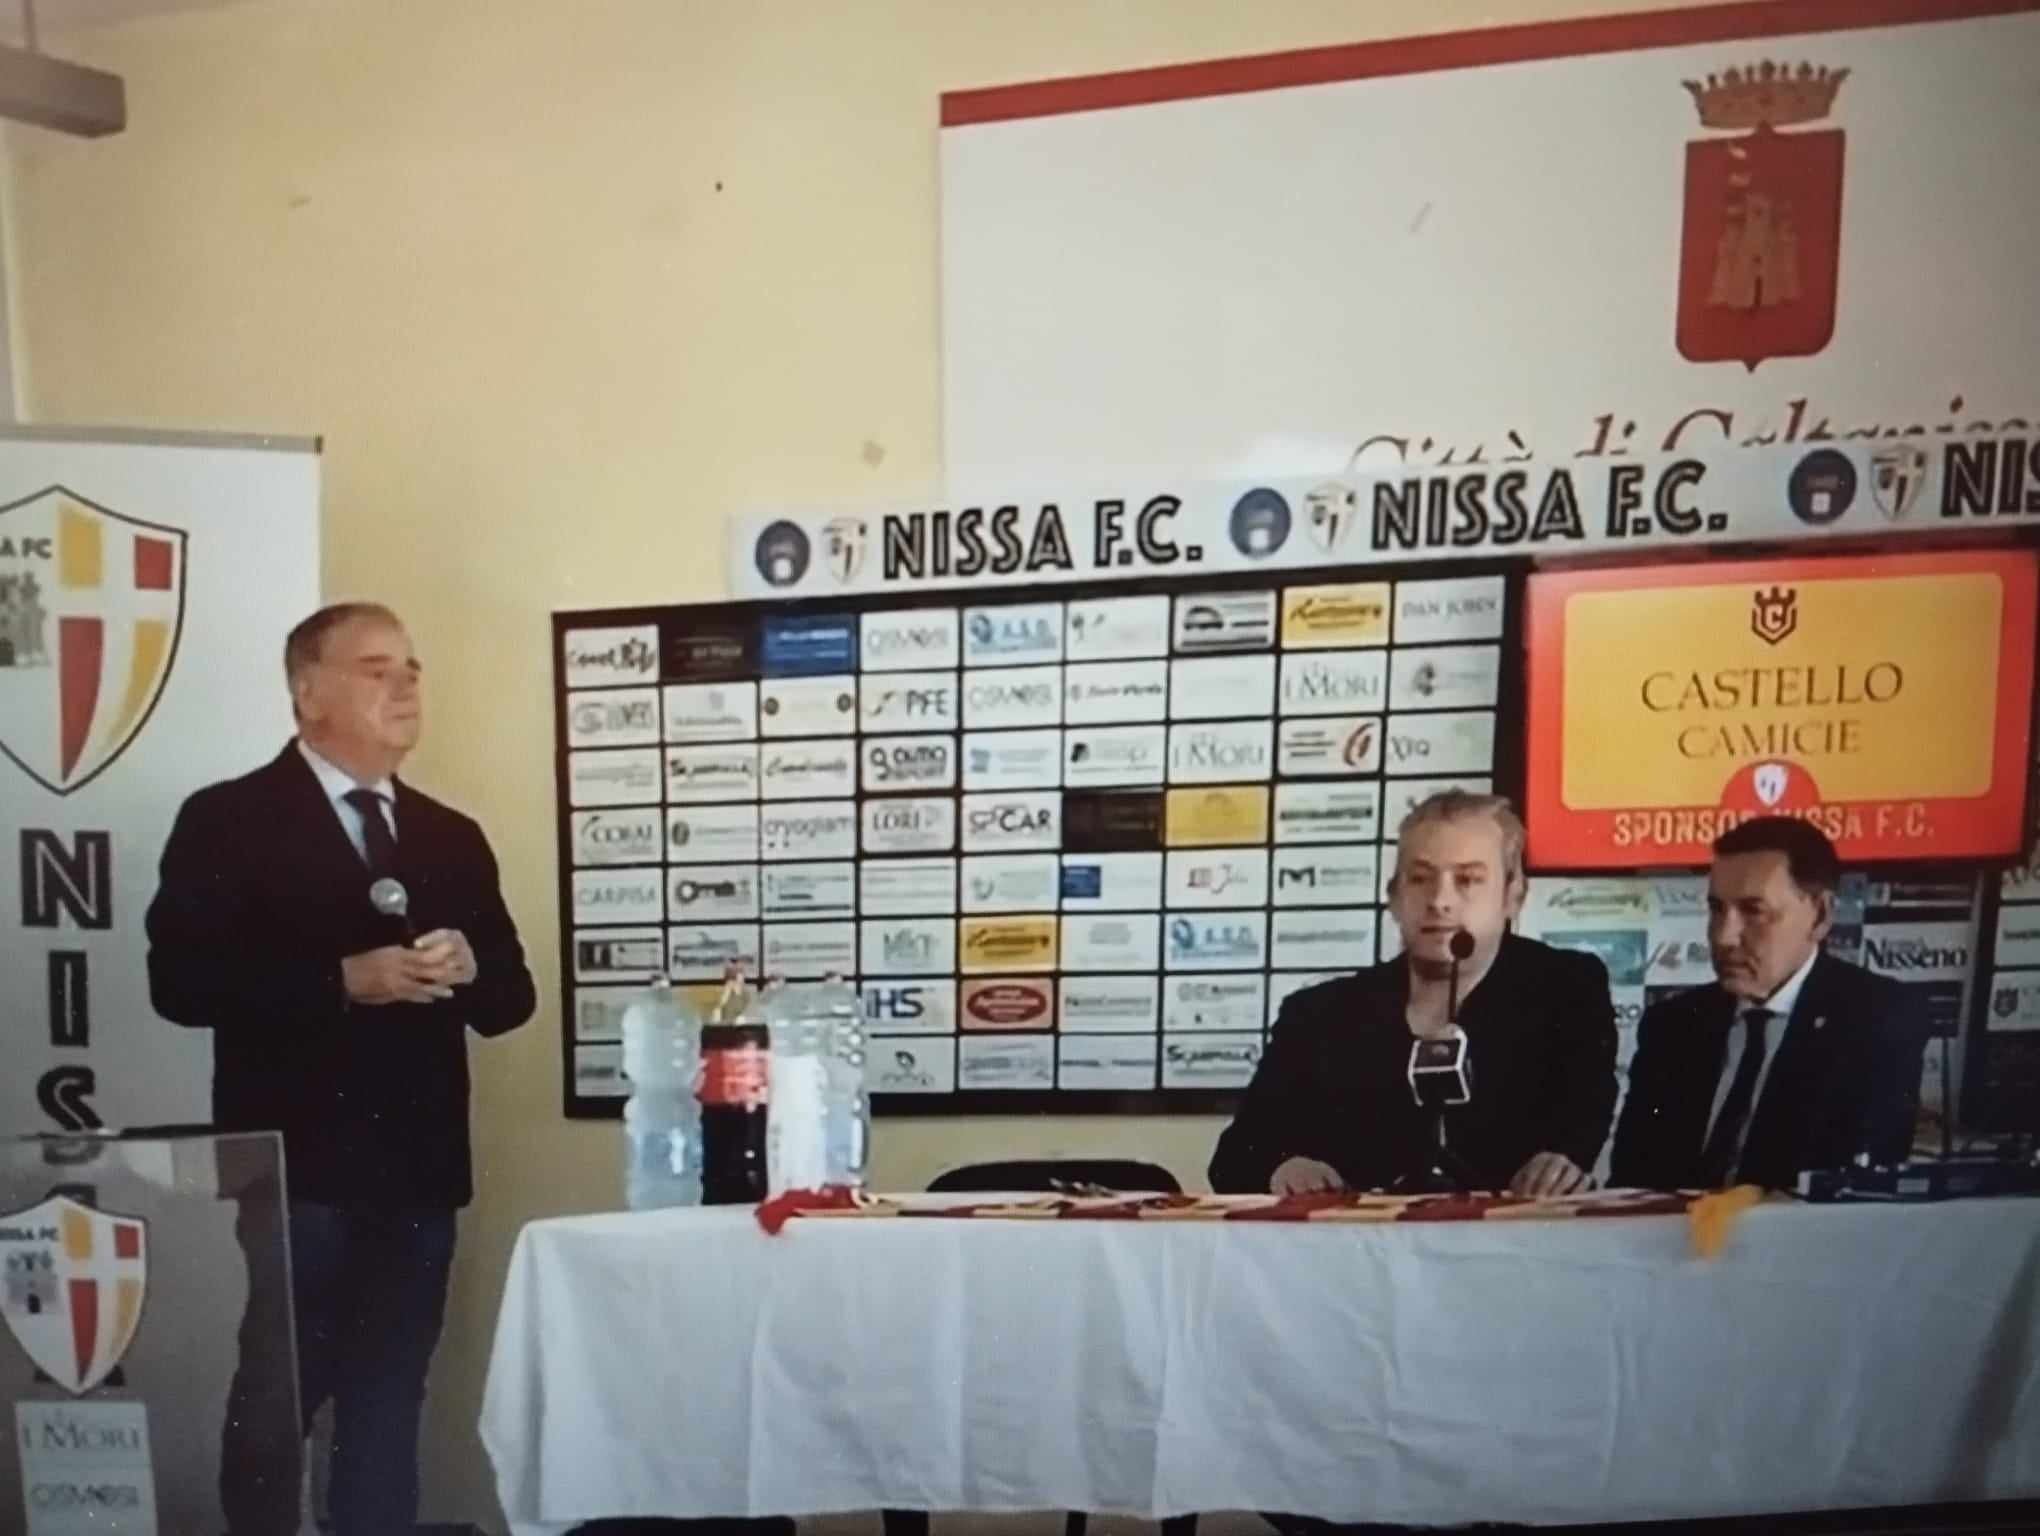 Alla Nissa due novità: la riconferma di Nicolò Terranova e l’imprenditore sardo Filippo Candio nuovo socio e sponsor